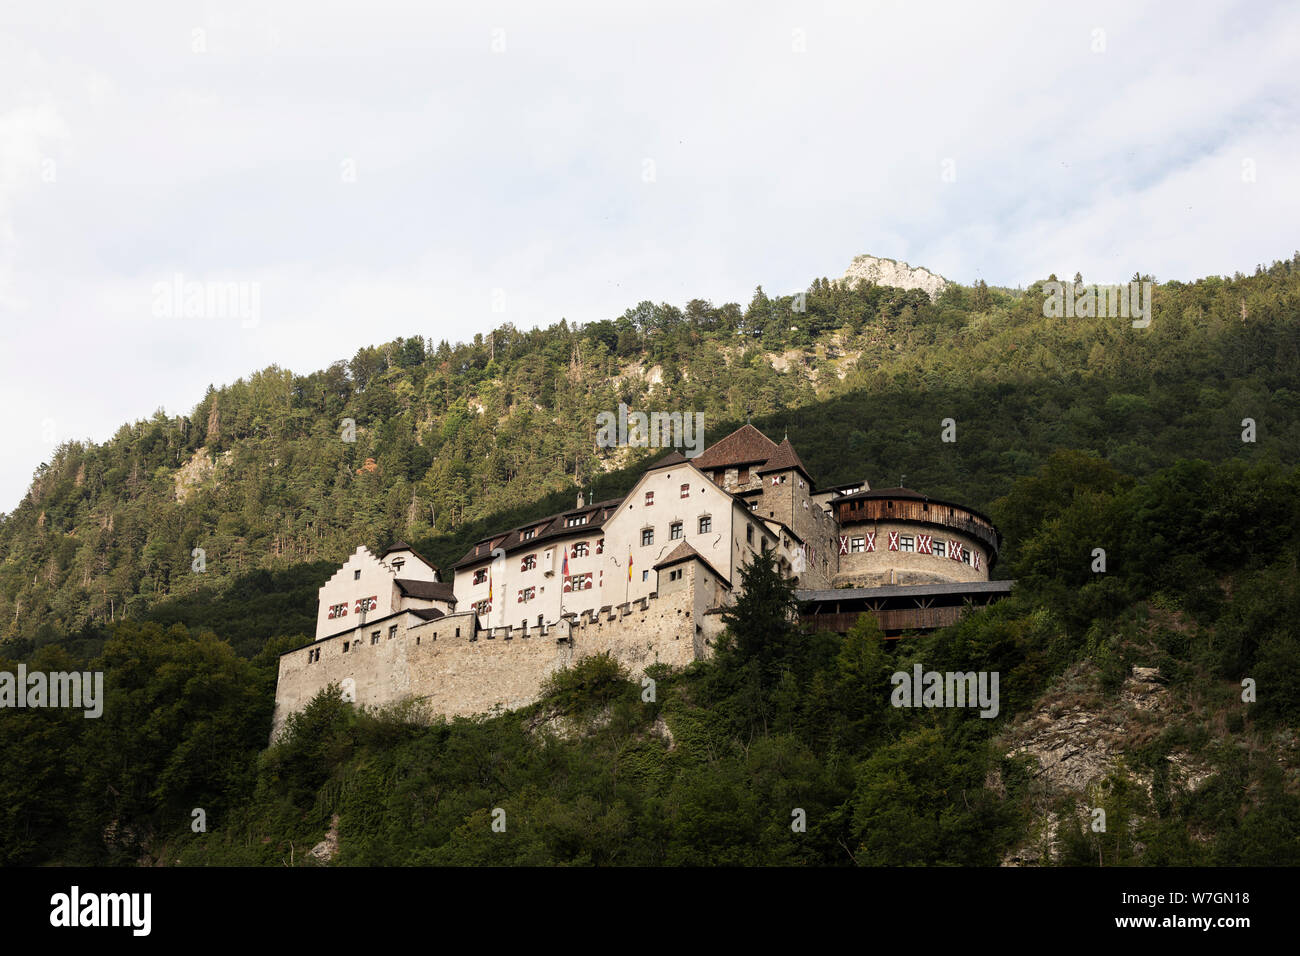 Il Castello di Vaduz, la residenza ufficiale del Principe del Liechtenstein, si affaccia sulla città di Vaduz dalla sua posizione collinare. Foto Stock